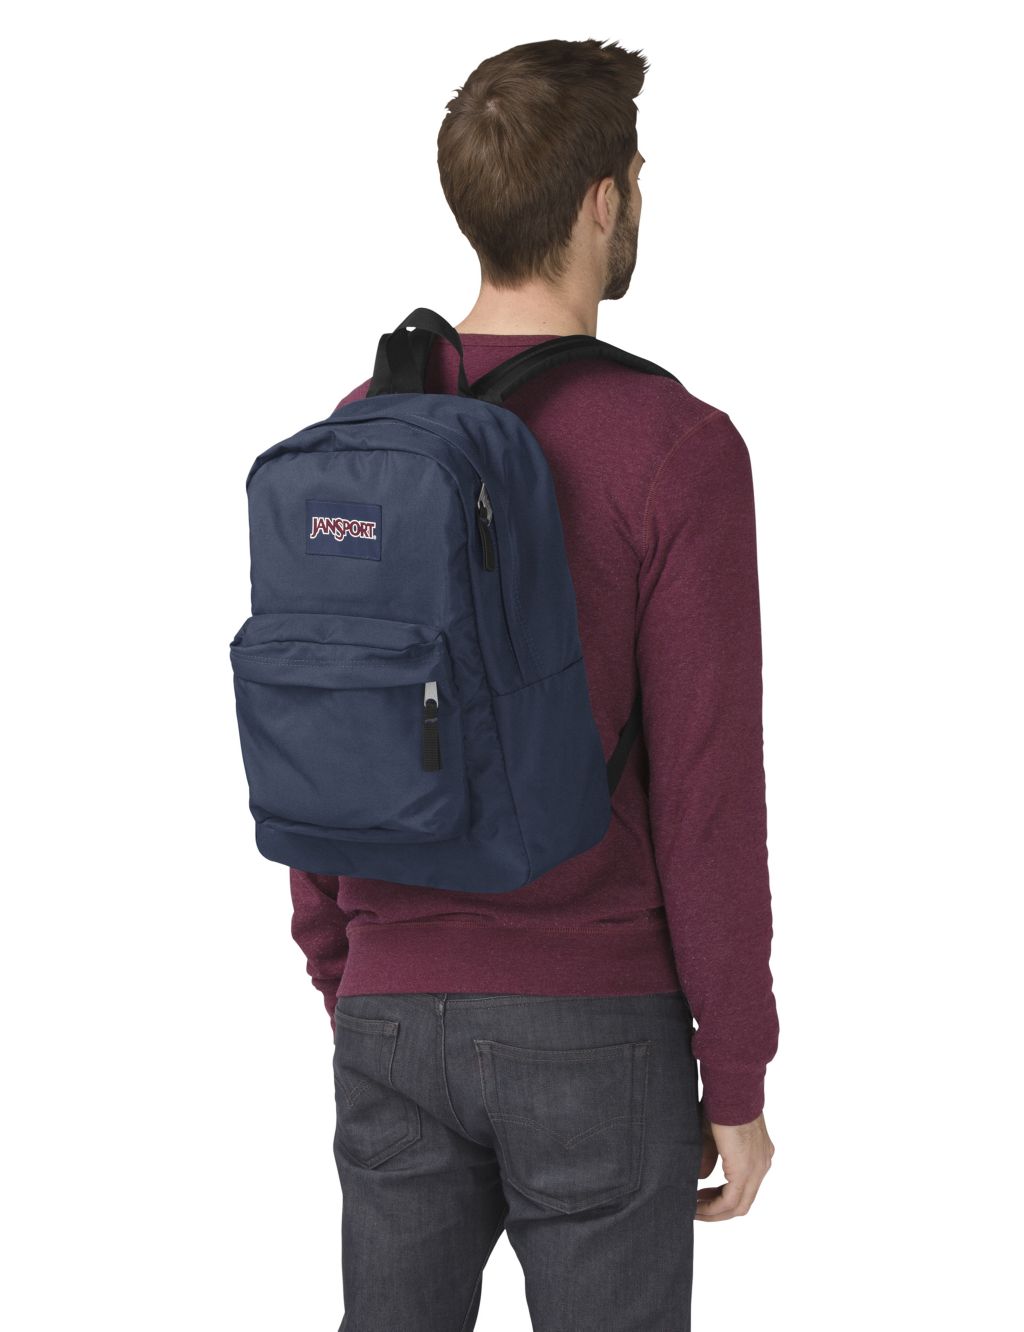 SuperBreak One Backpack image 2